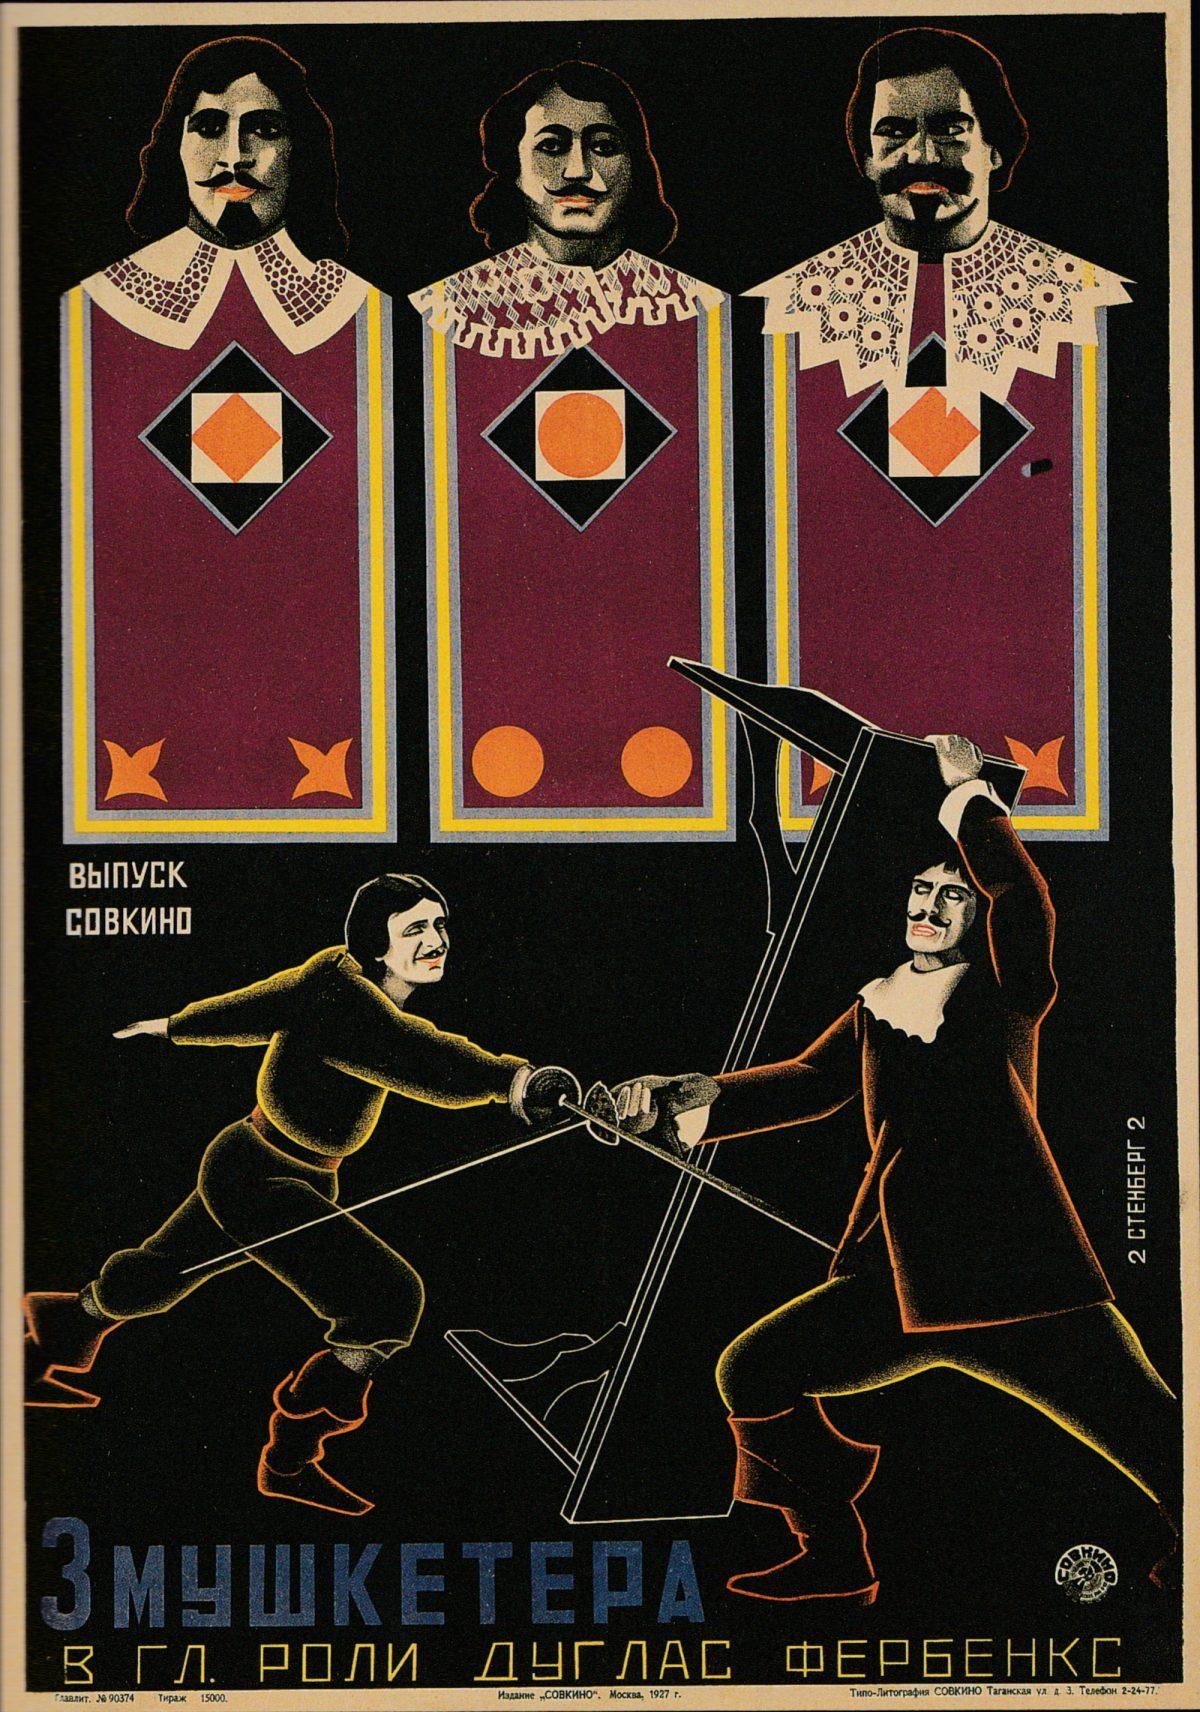 Des Affiches de films de l'Avant-Garde Soviétique